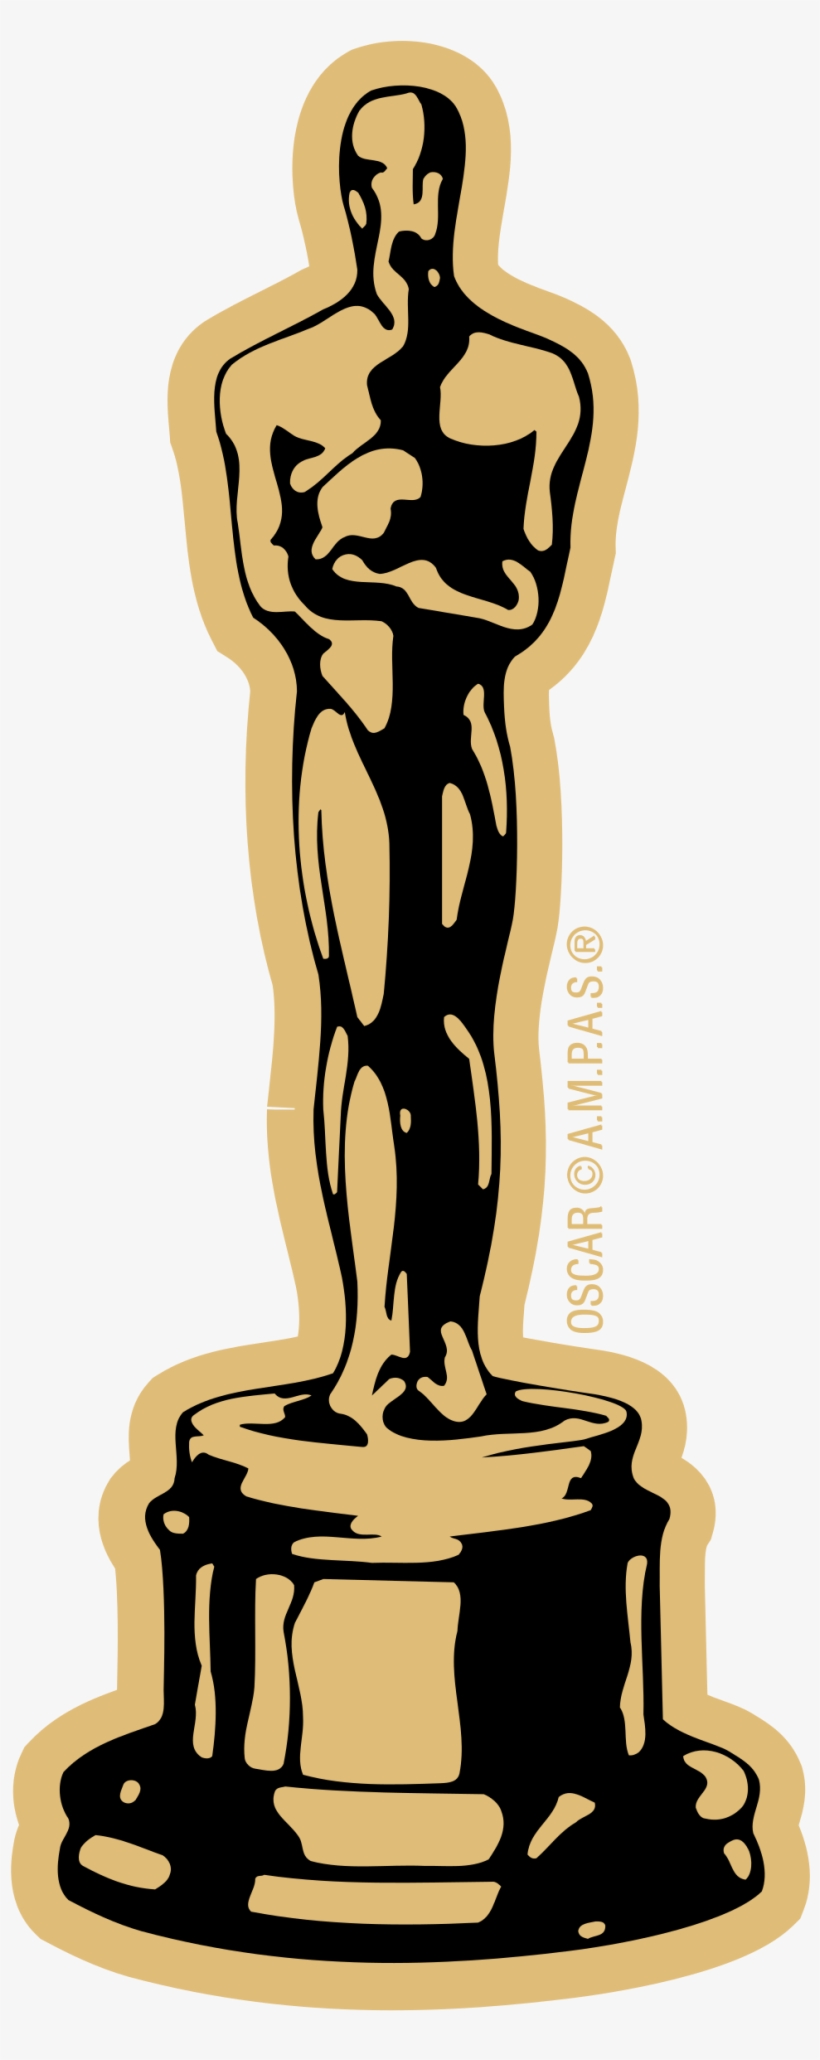 Oscar Logo Png Transparent - 84th Annual Academy Awards (2012), transparent png #2327664